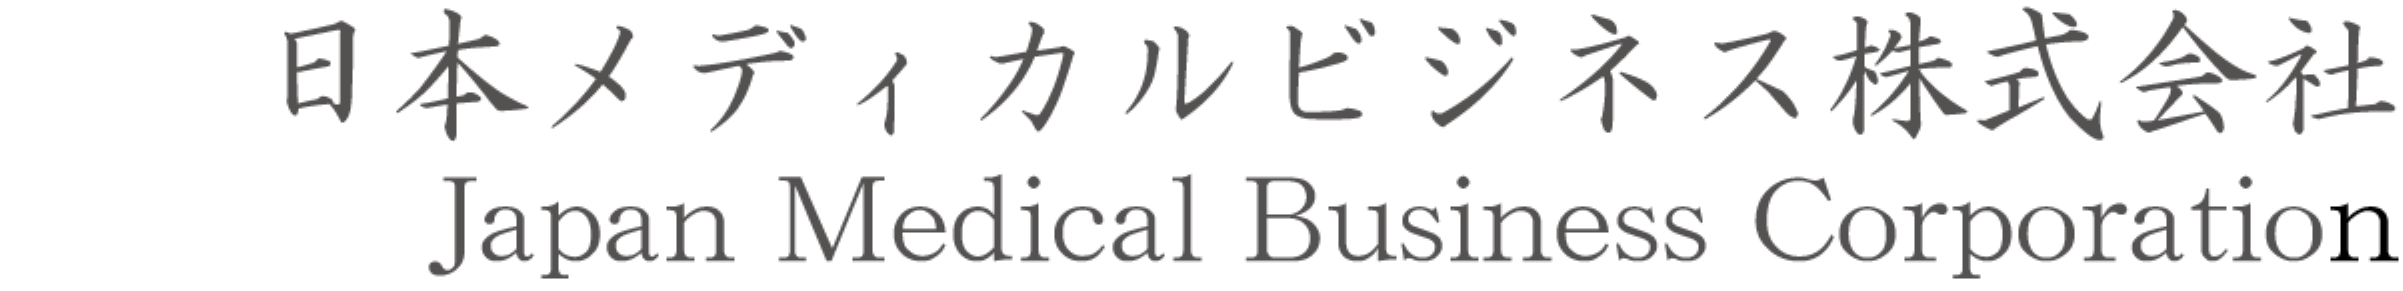 日本メディカルビジネス株式会社ロゴ